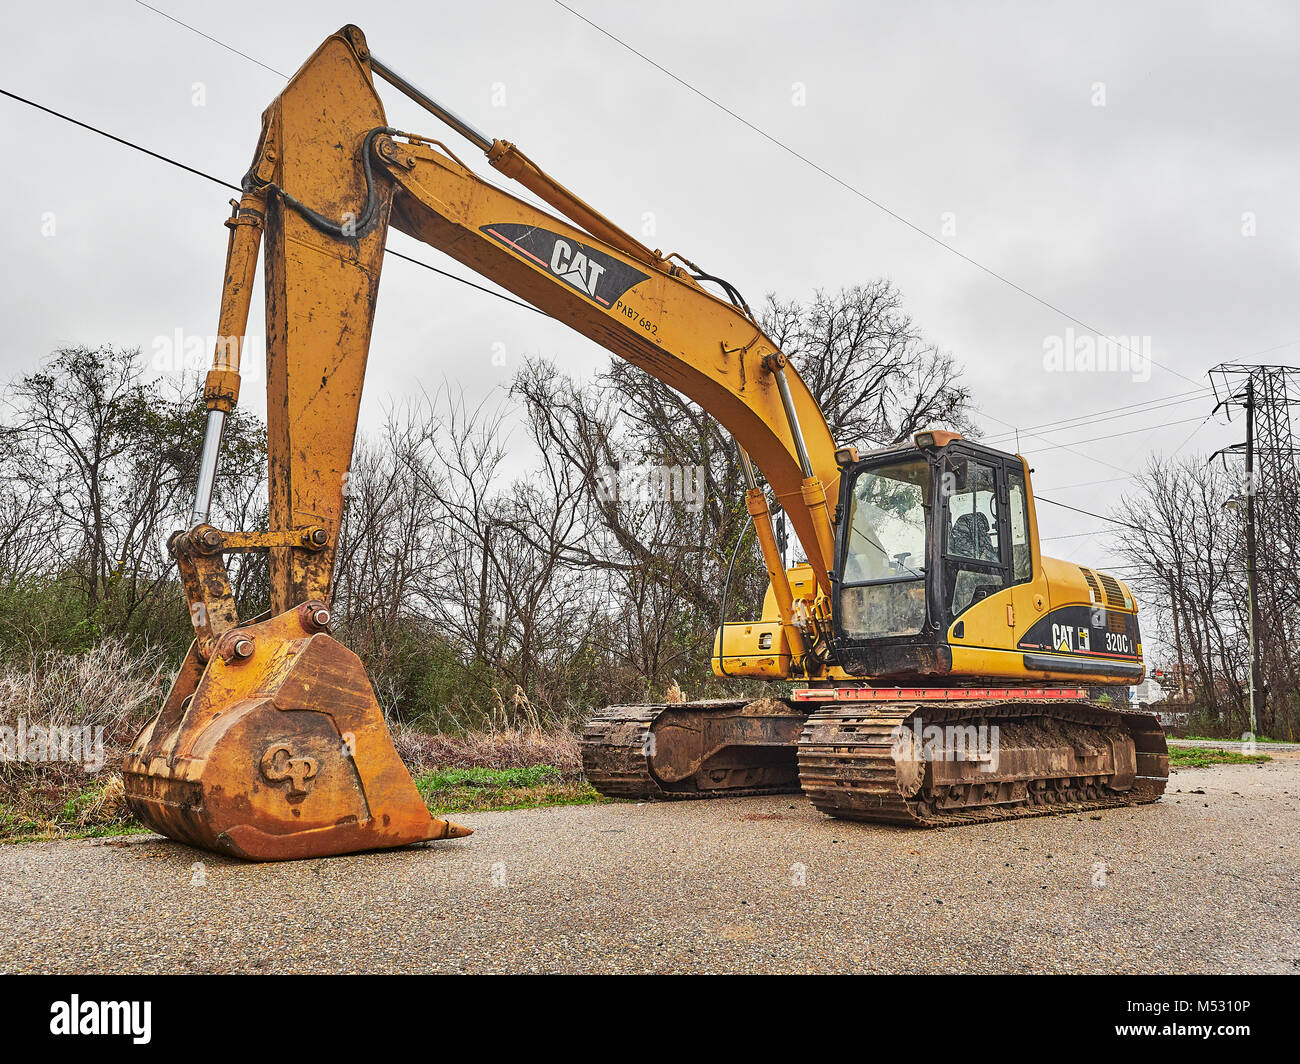 CAT 320C heavy duty digger, excavadora hidráulica, un gran pedazo de maquinaria de construcción sentado inactivo en Montgomery, Alabama, Estados Unidos. Foto de stock